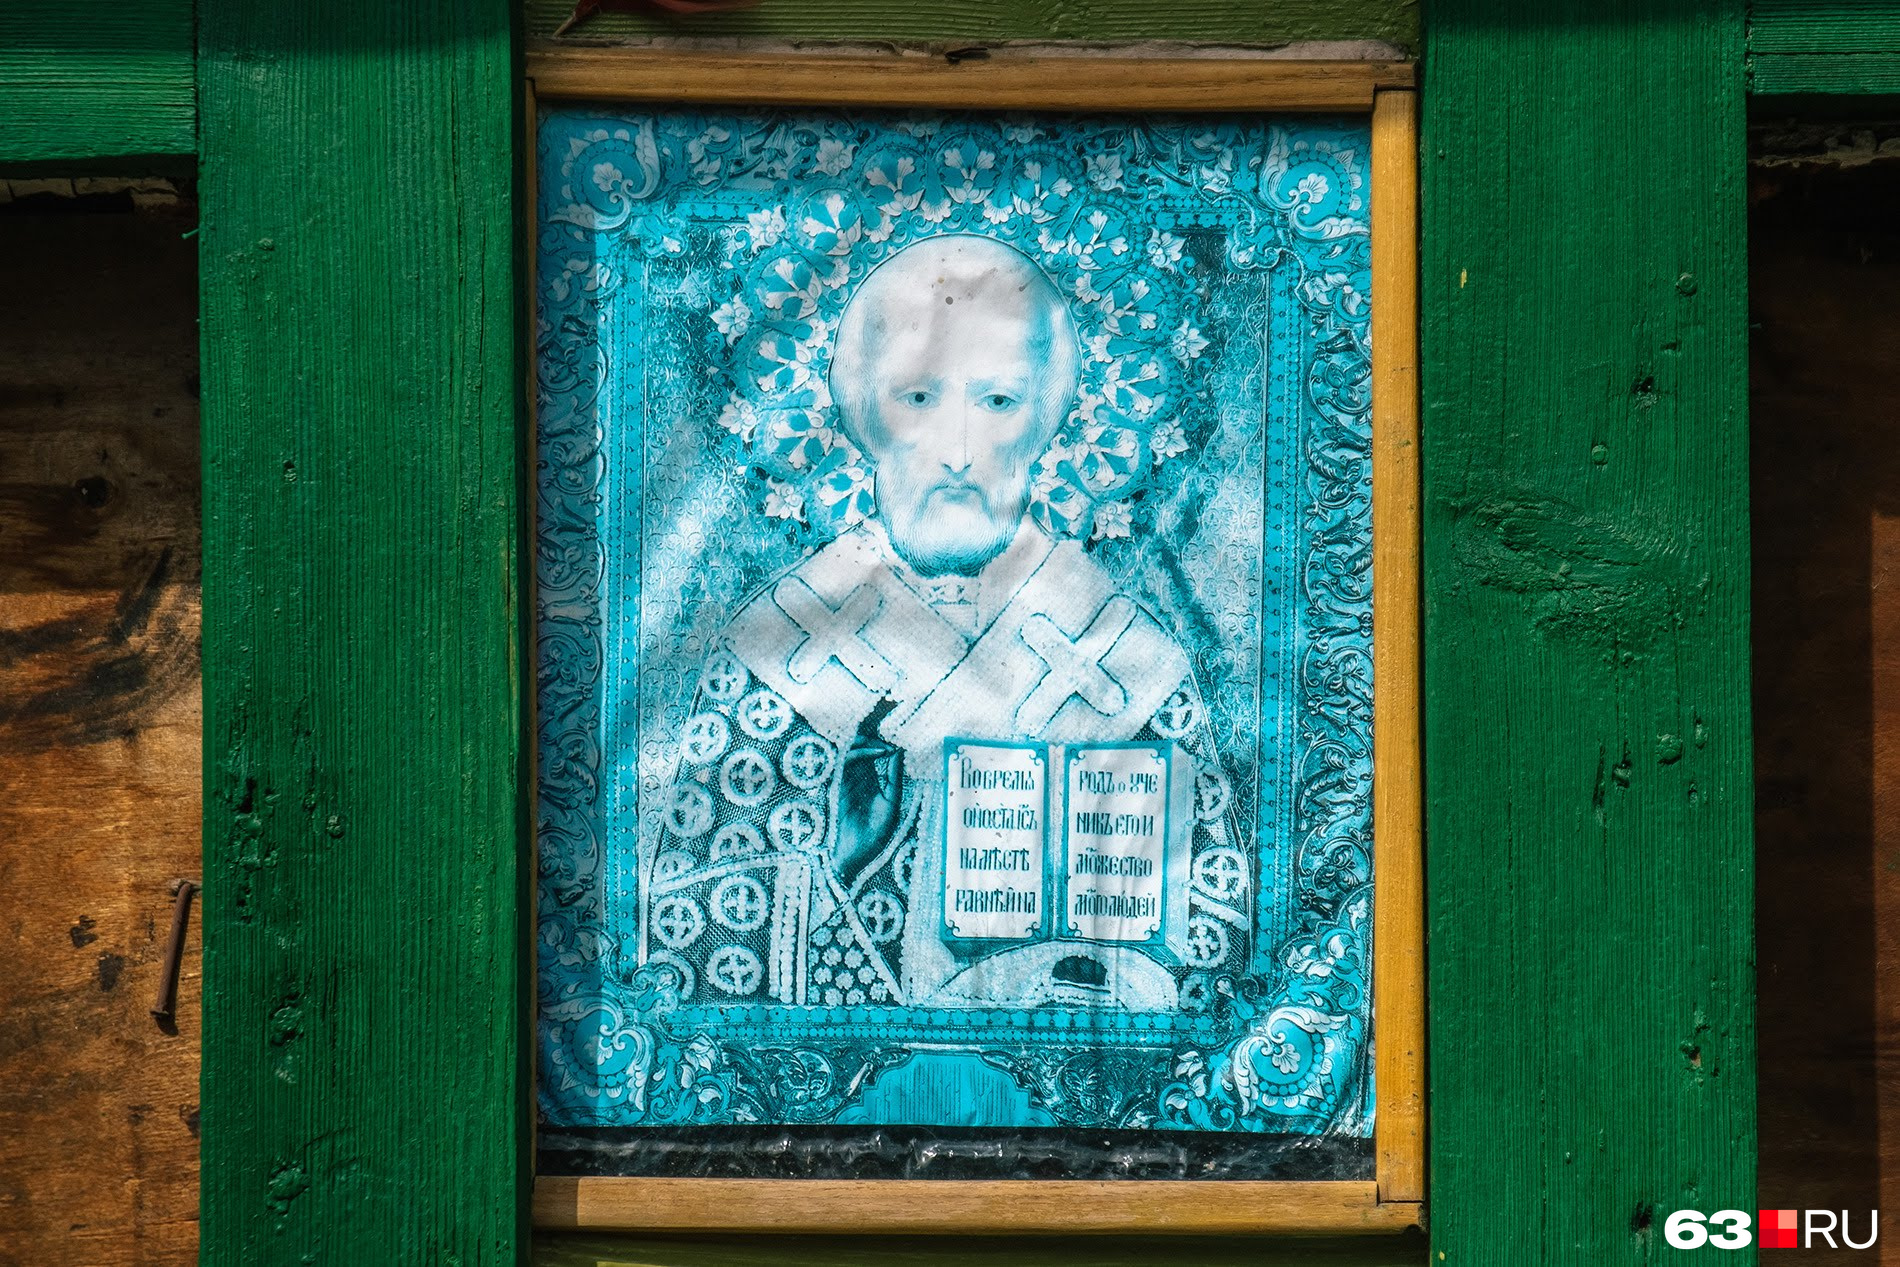 Изображение Николая Чудотворца украшает стену легендарного дома на Чкалова